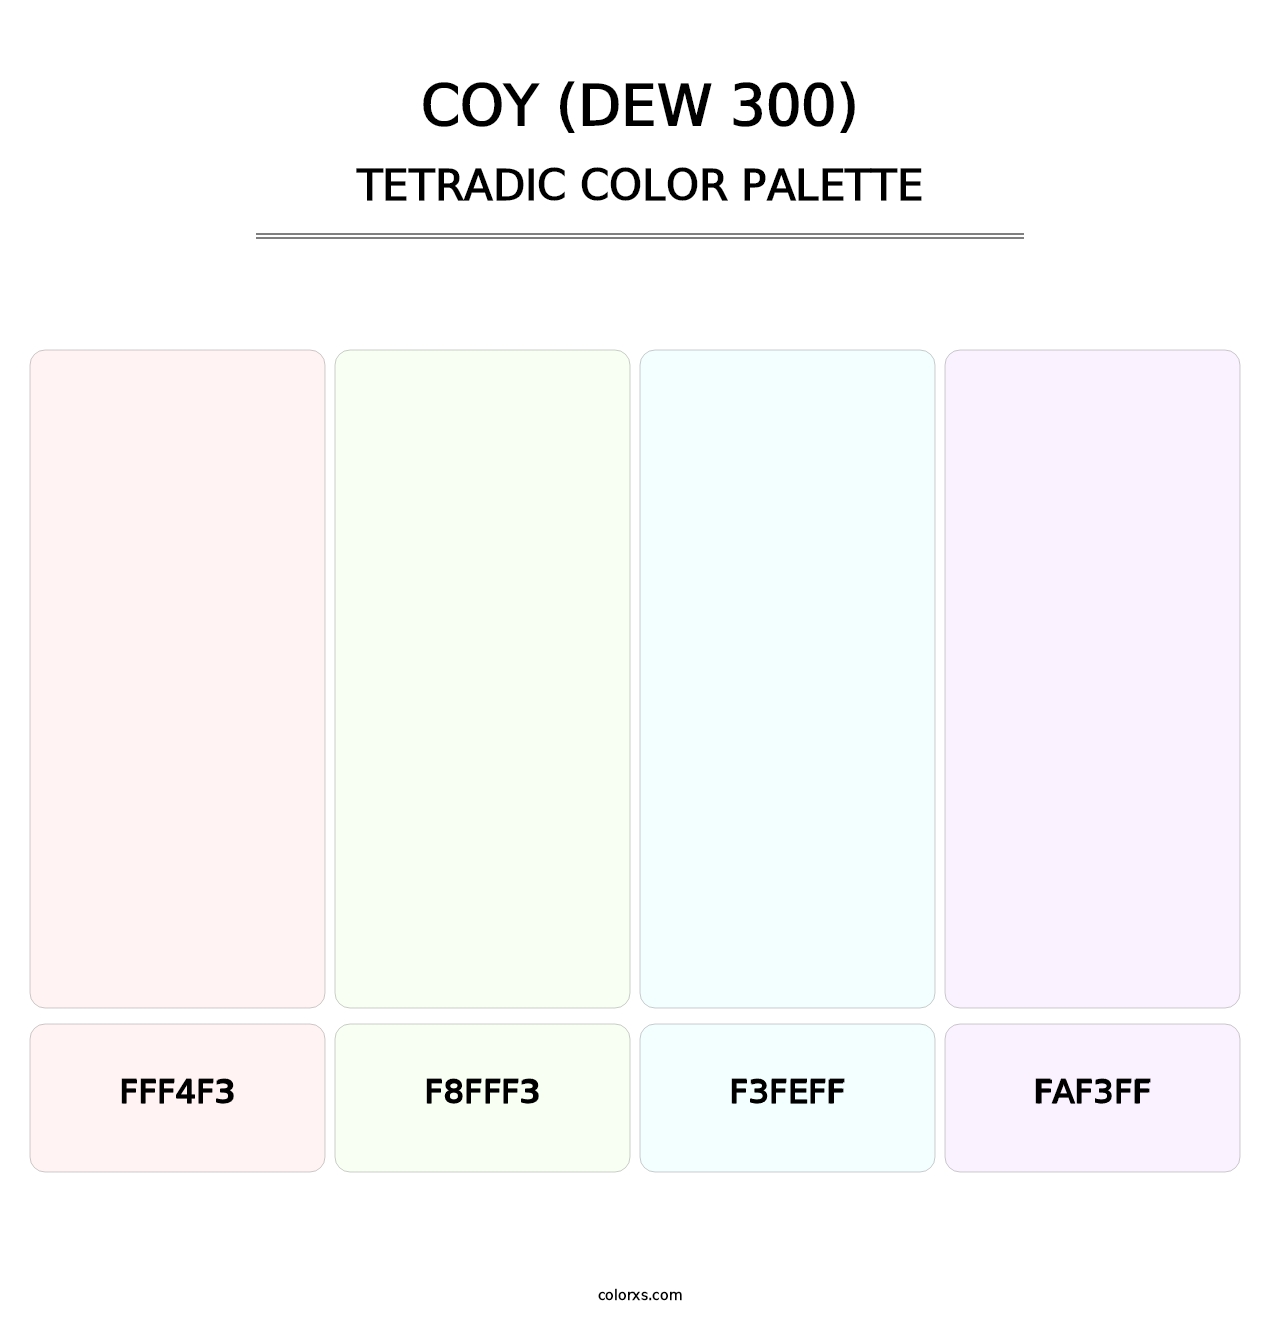 Coy (DEW 300) - Tetradic Color Palette